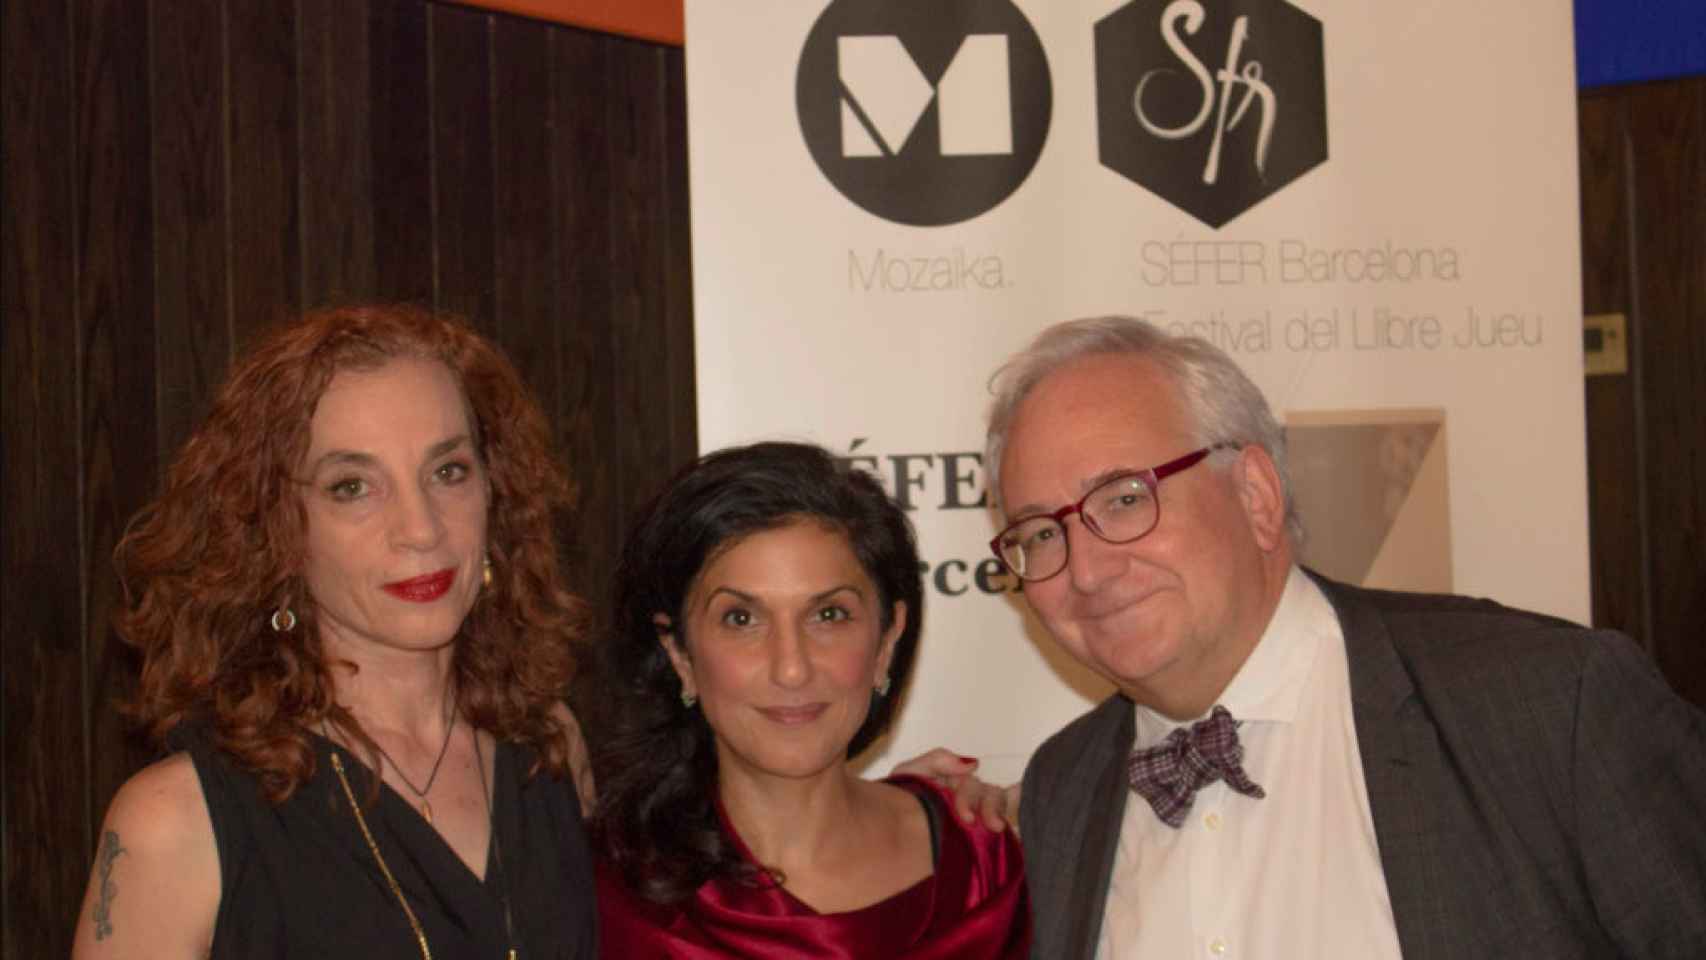 Las escritoras Tal Nitzan y Dorit Rabinyan junto al poeta Carles Duarte en Festival Séfer Barcelona de literatura hebrea de 2018 / ALEX ZSARFER